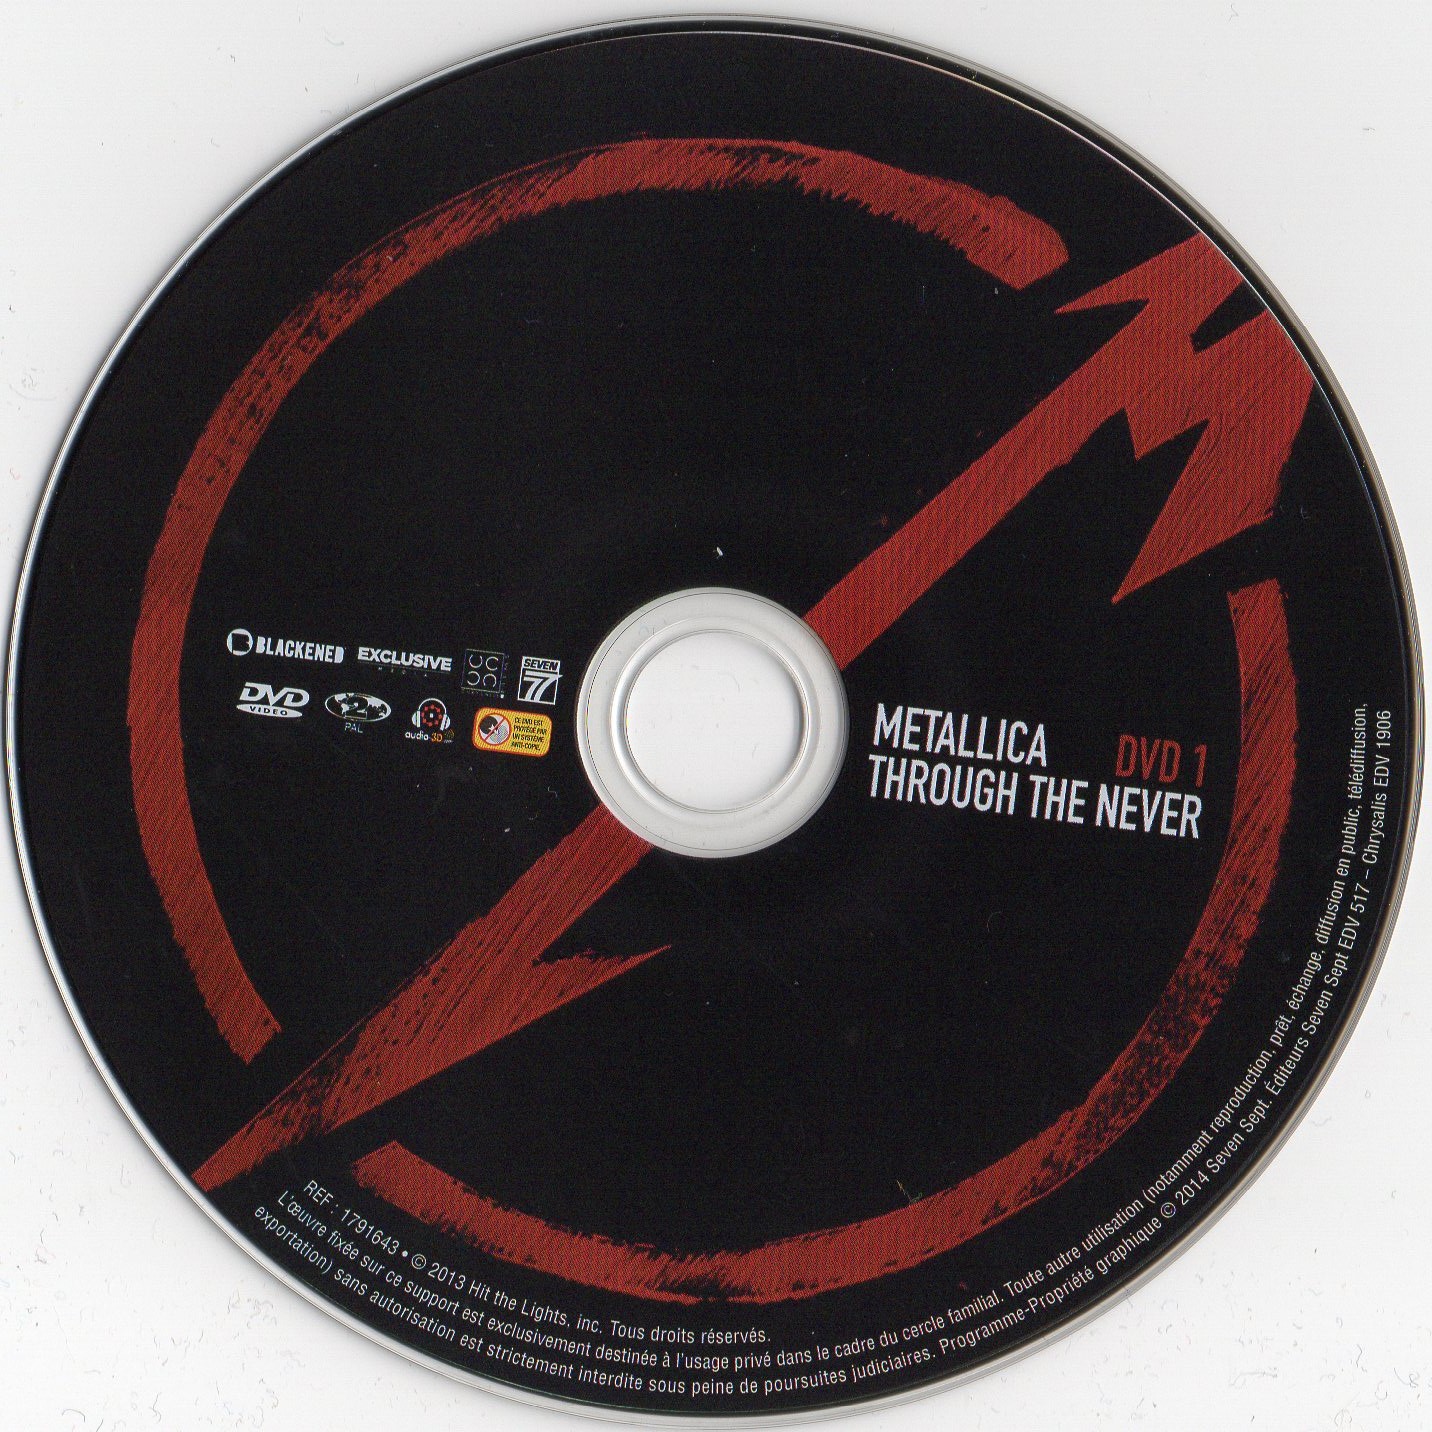 Metallica - Through the never DISC 1